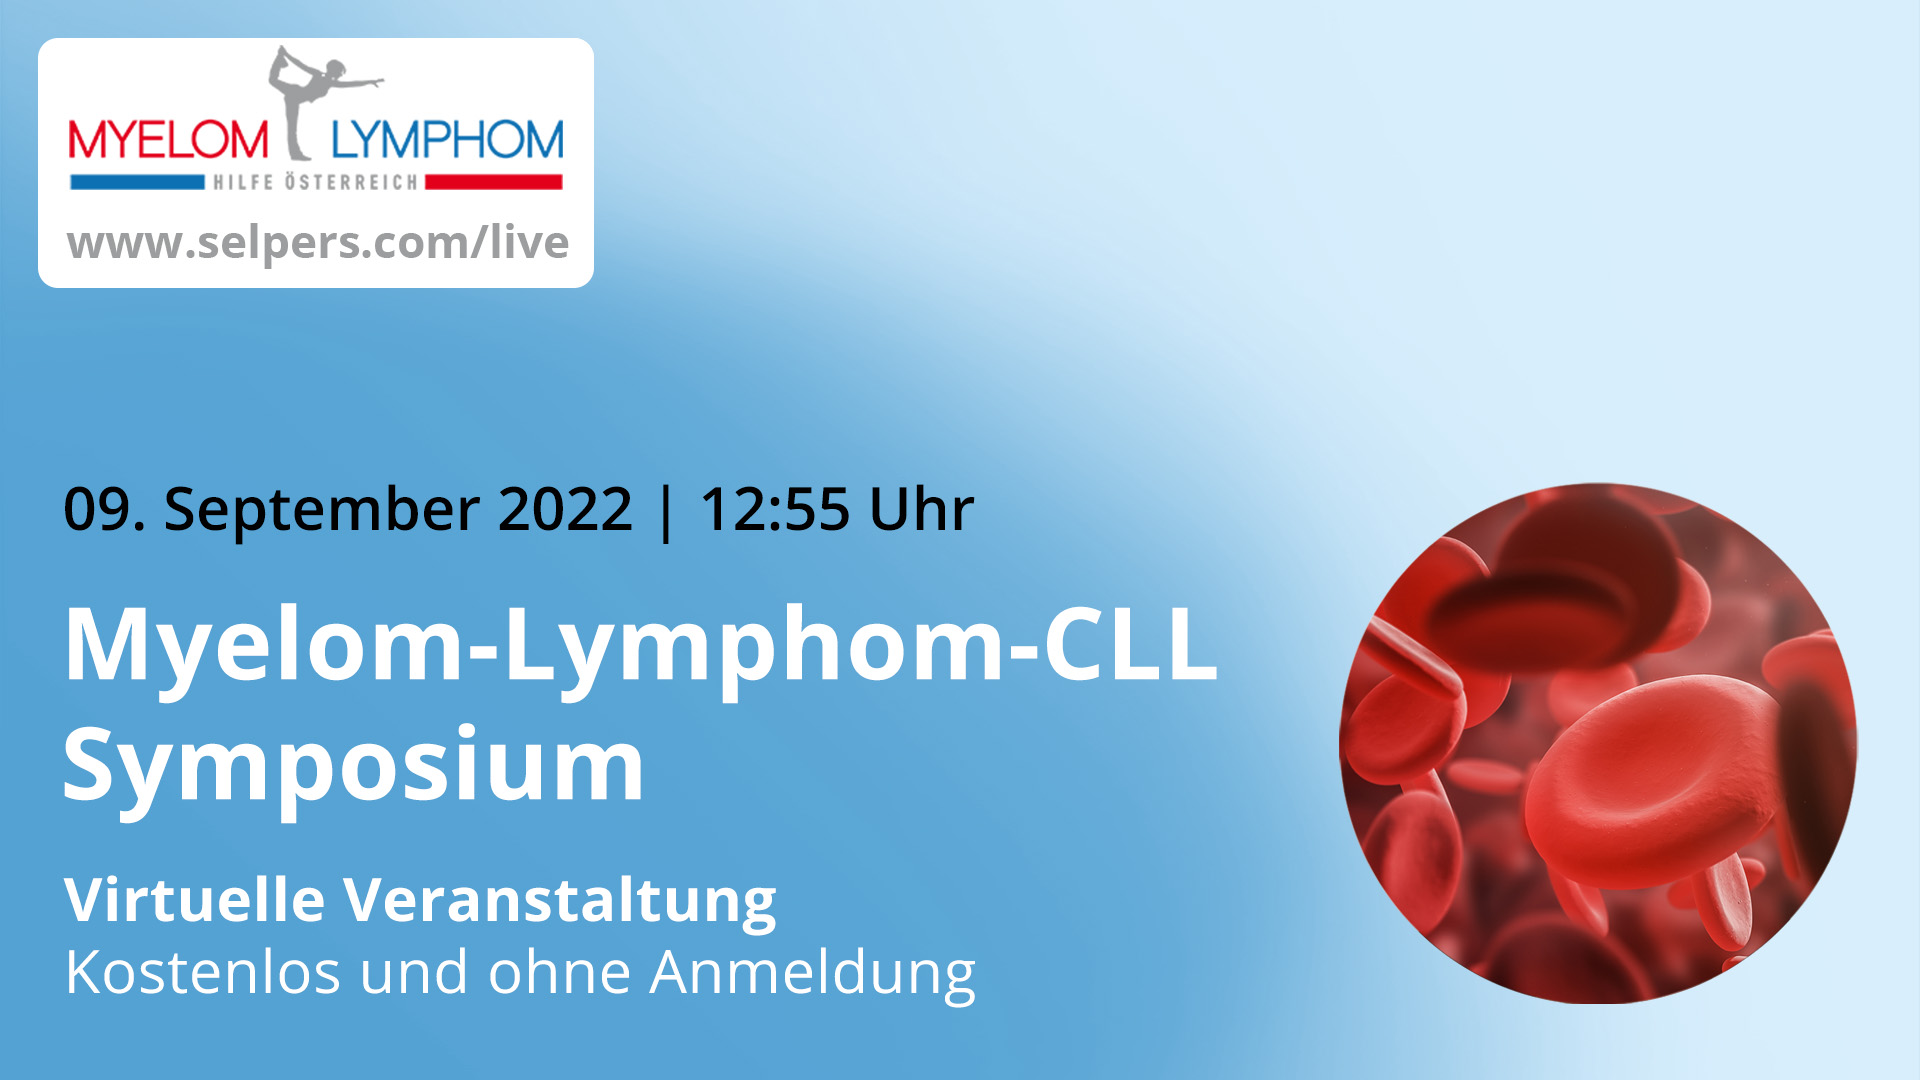 Myelom-Lymphom-CLL-Symposium 2022